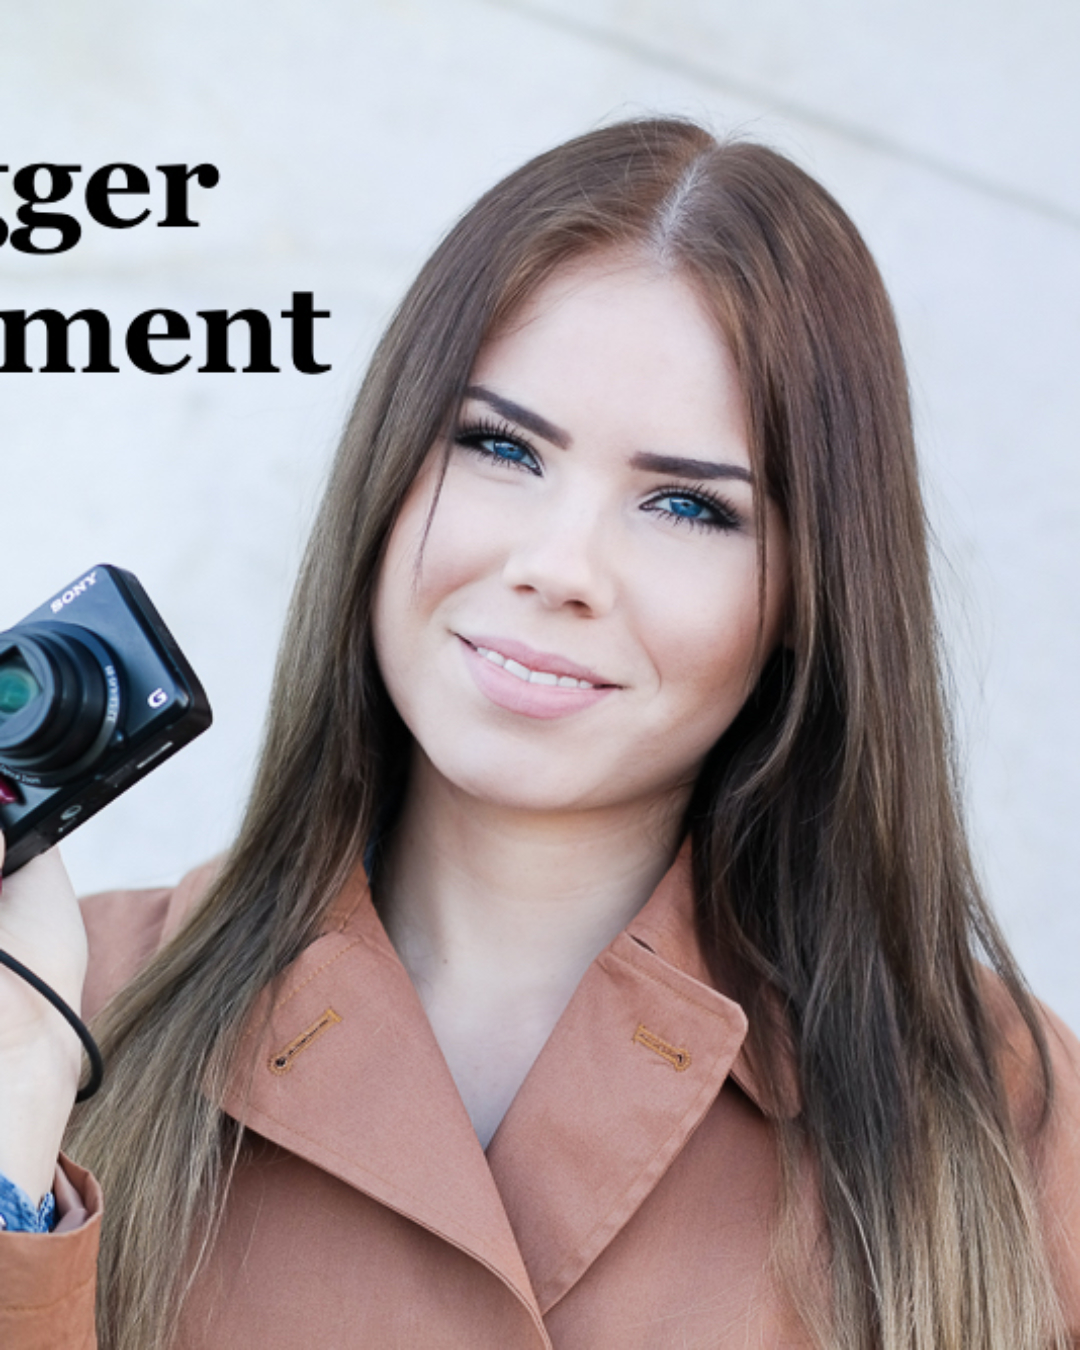 Modefotografie – Kamera & Equipment für Blogger